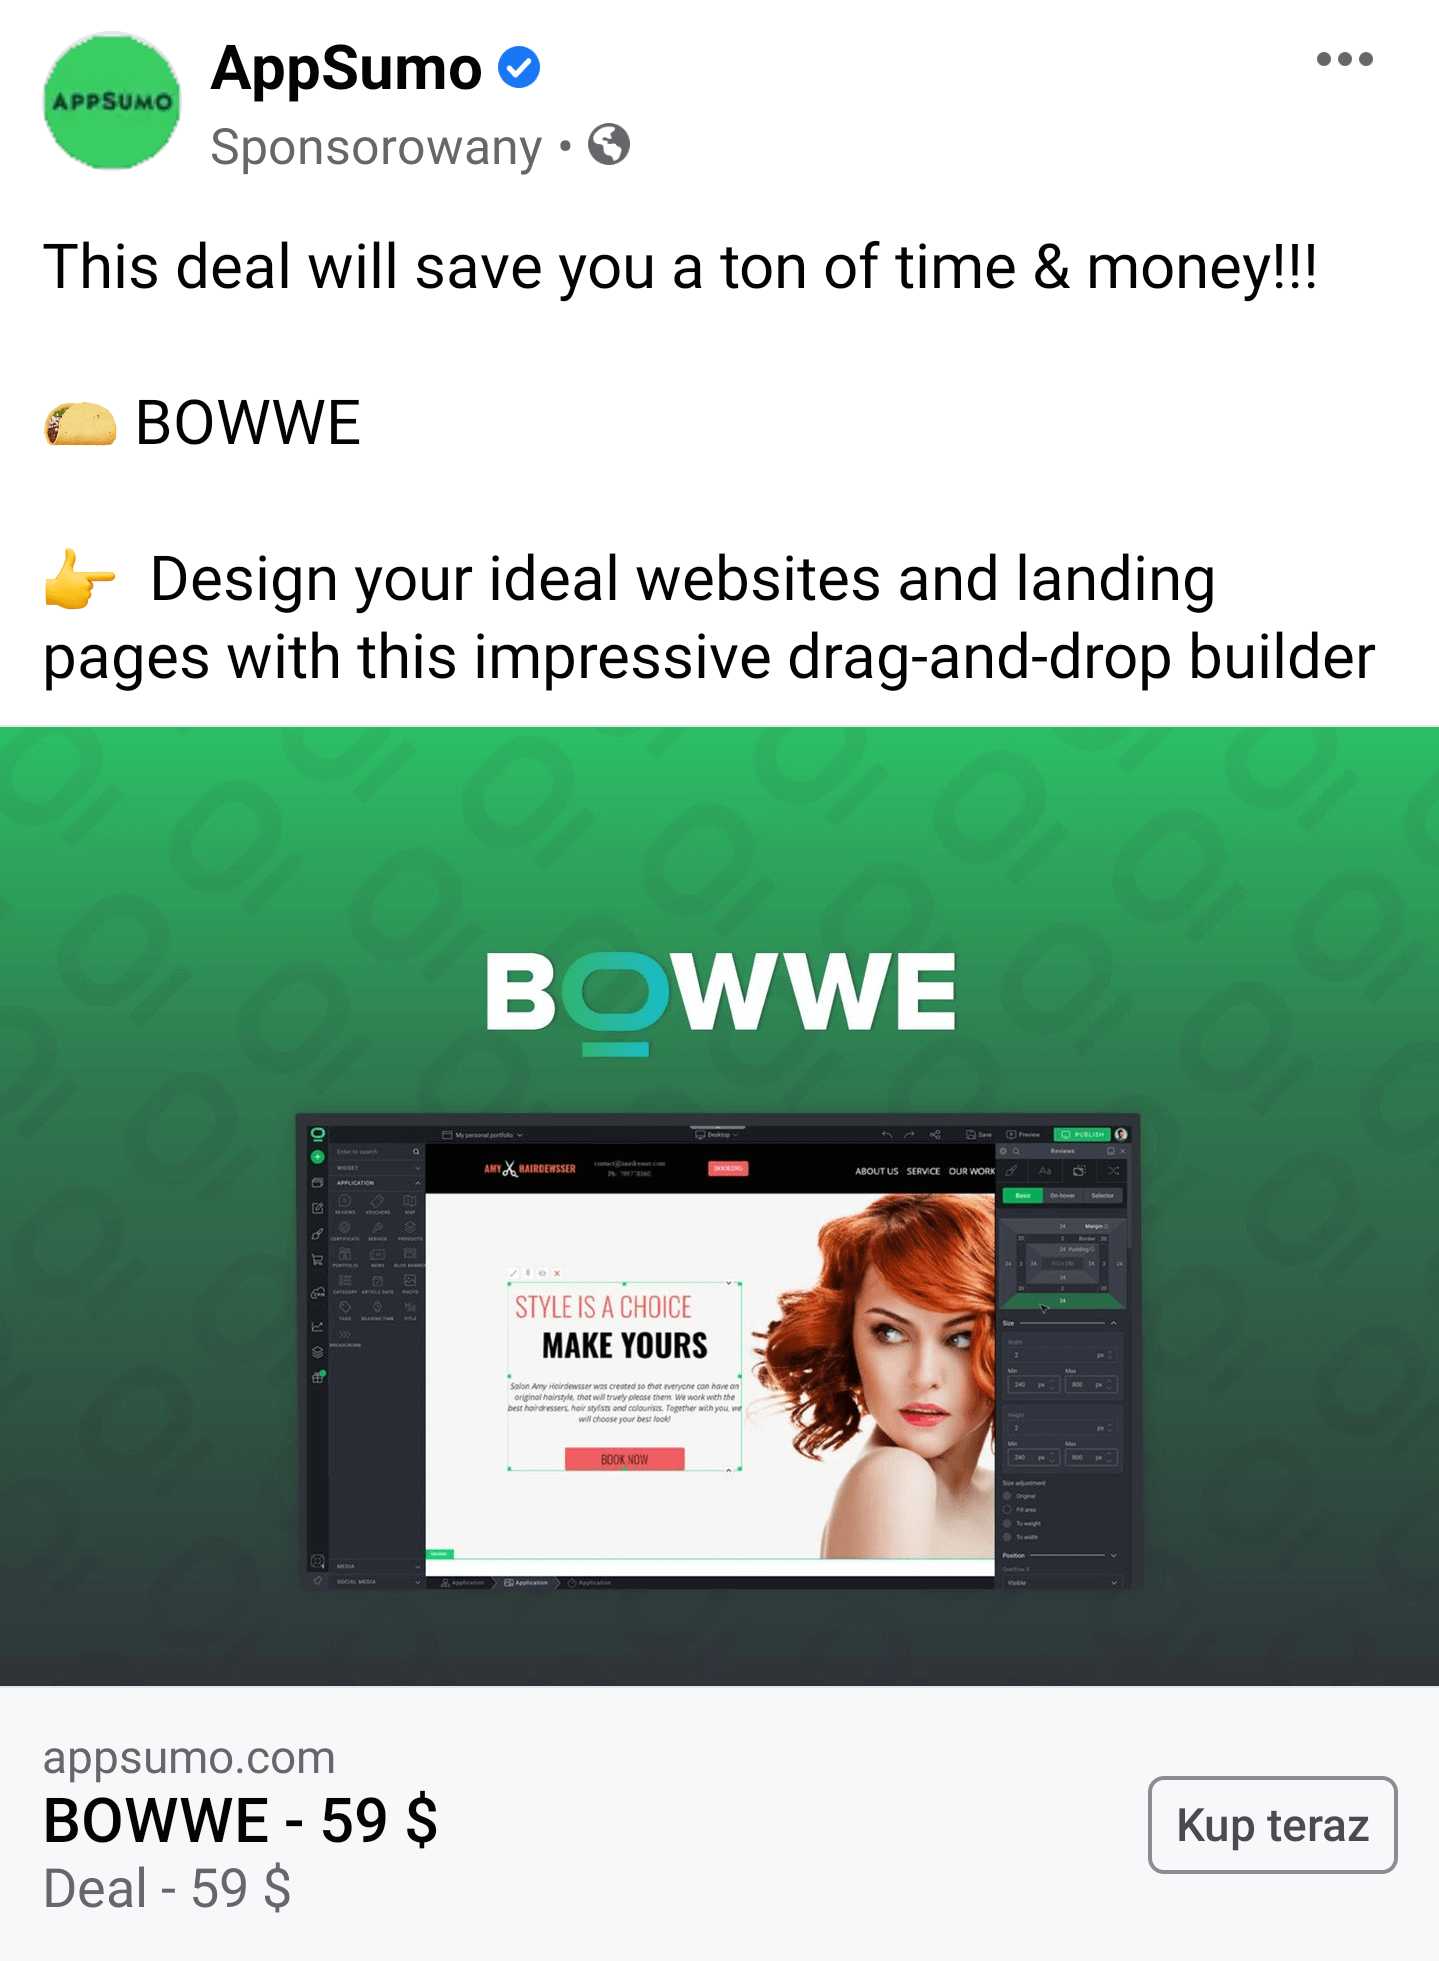 Реклама AppSumo о BOWWE